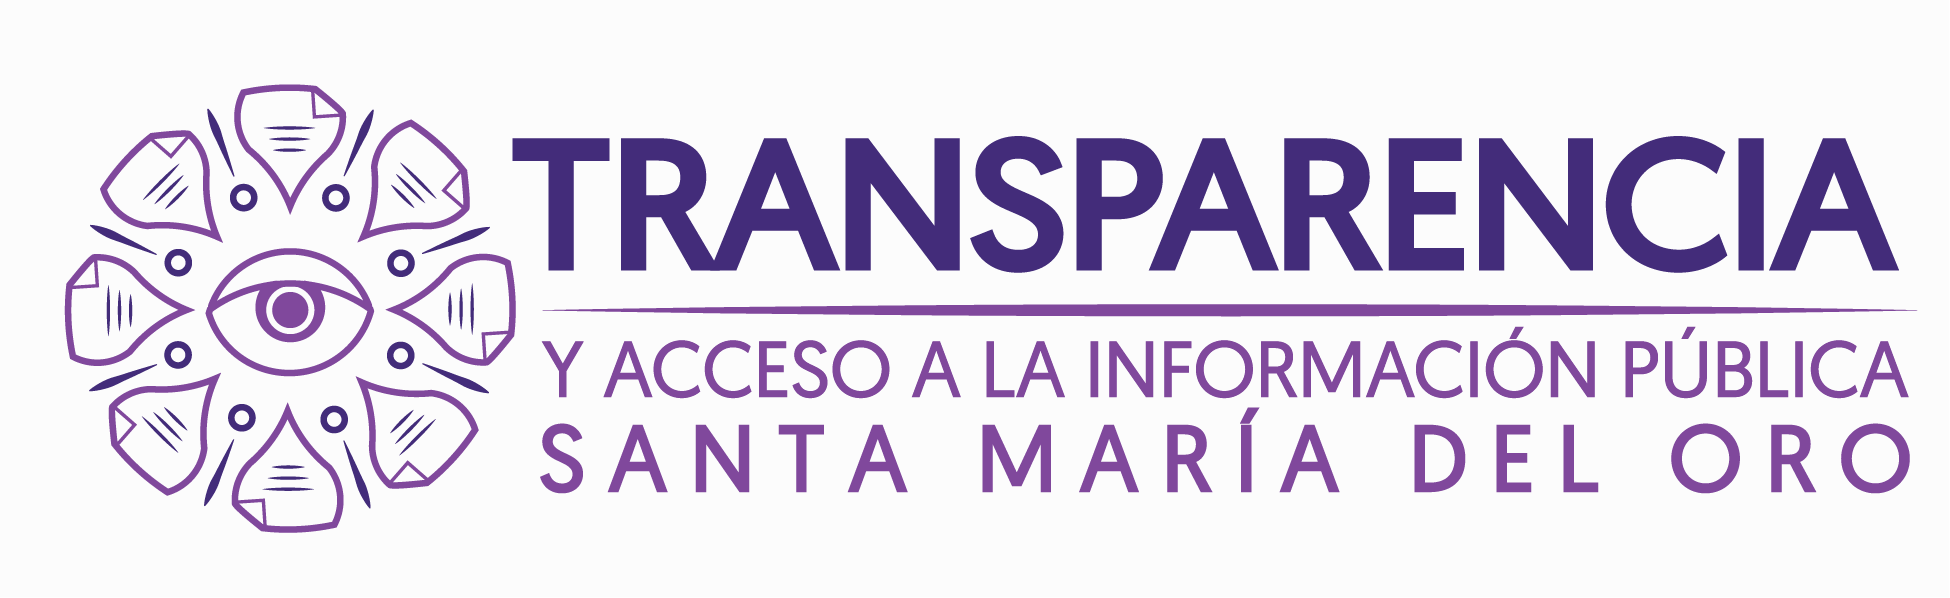 Logo Transparencia horizontal